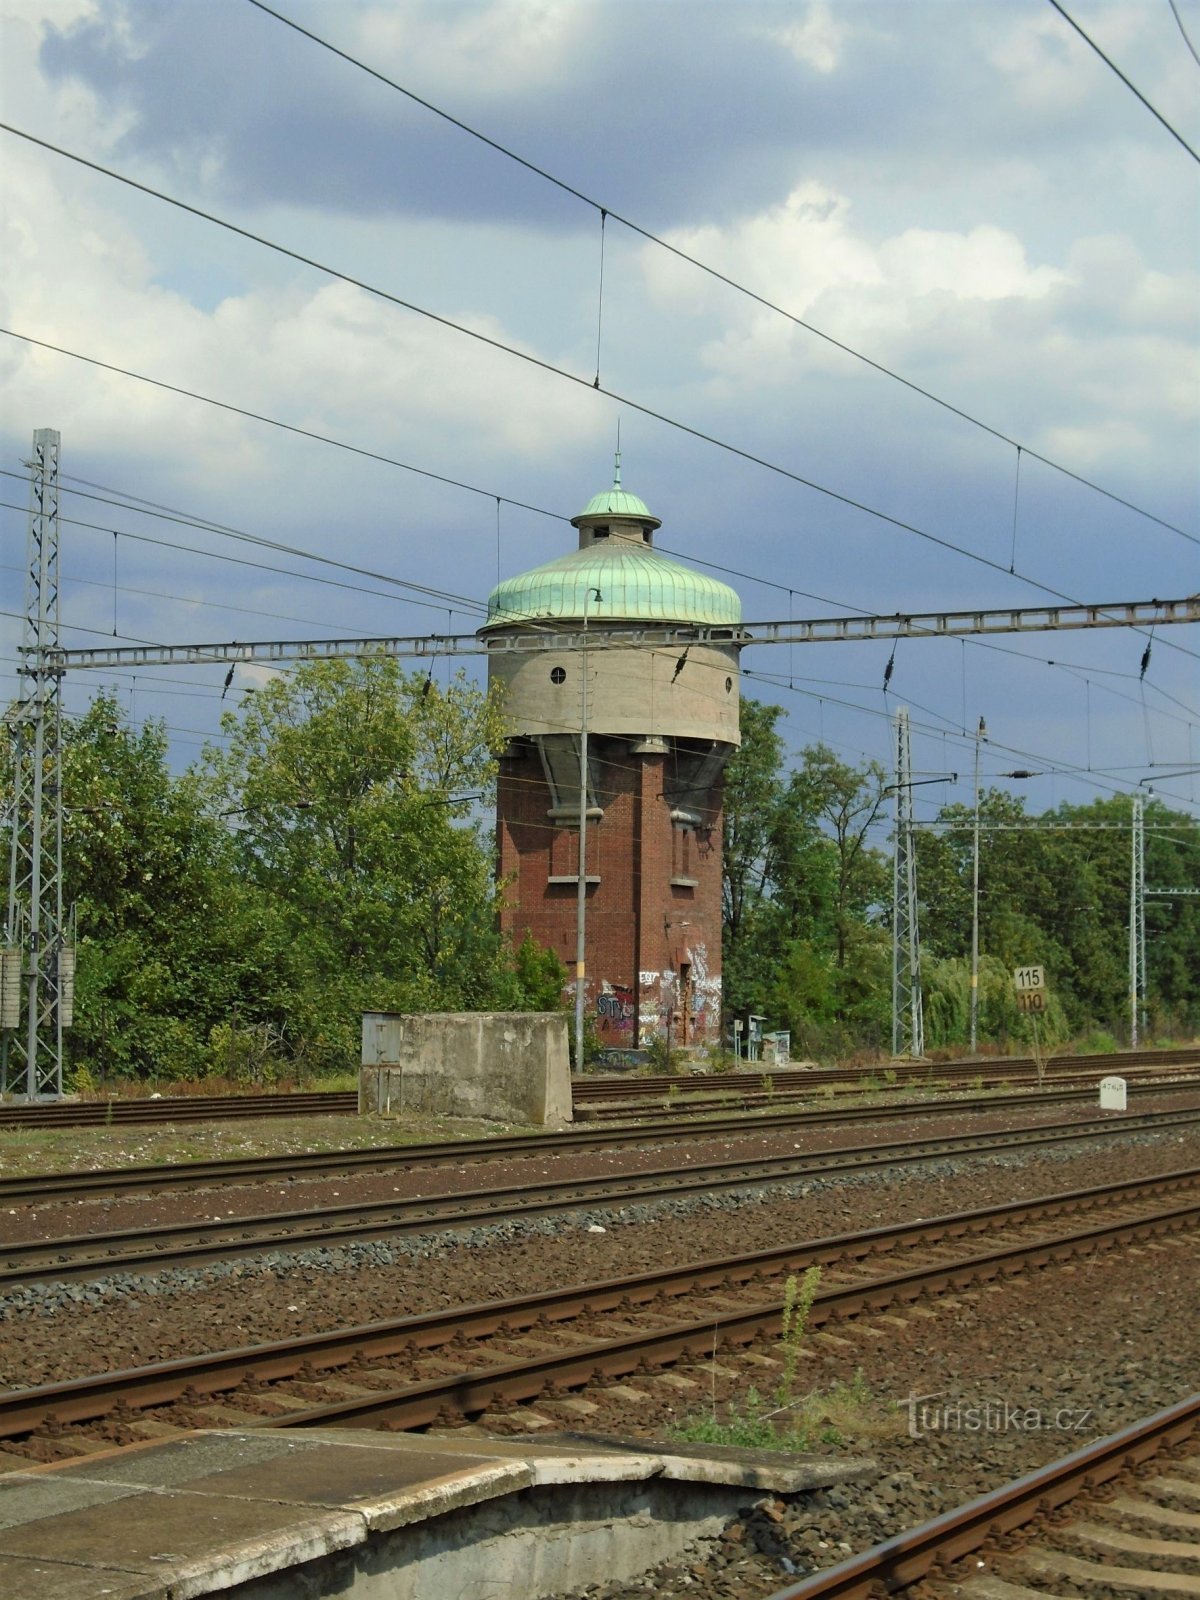 Резервуар станційної вежі (Roudnice nad Labem, 23.7.2018)